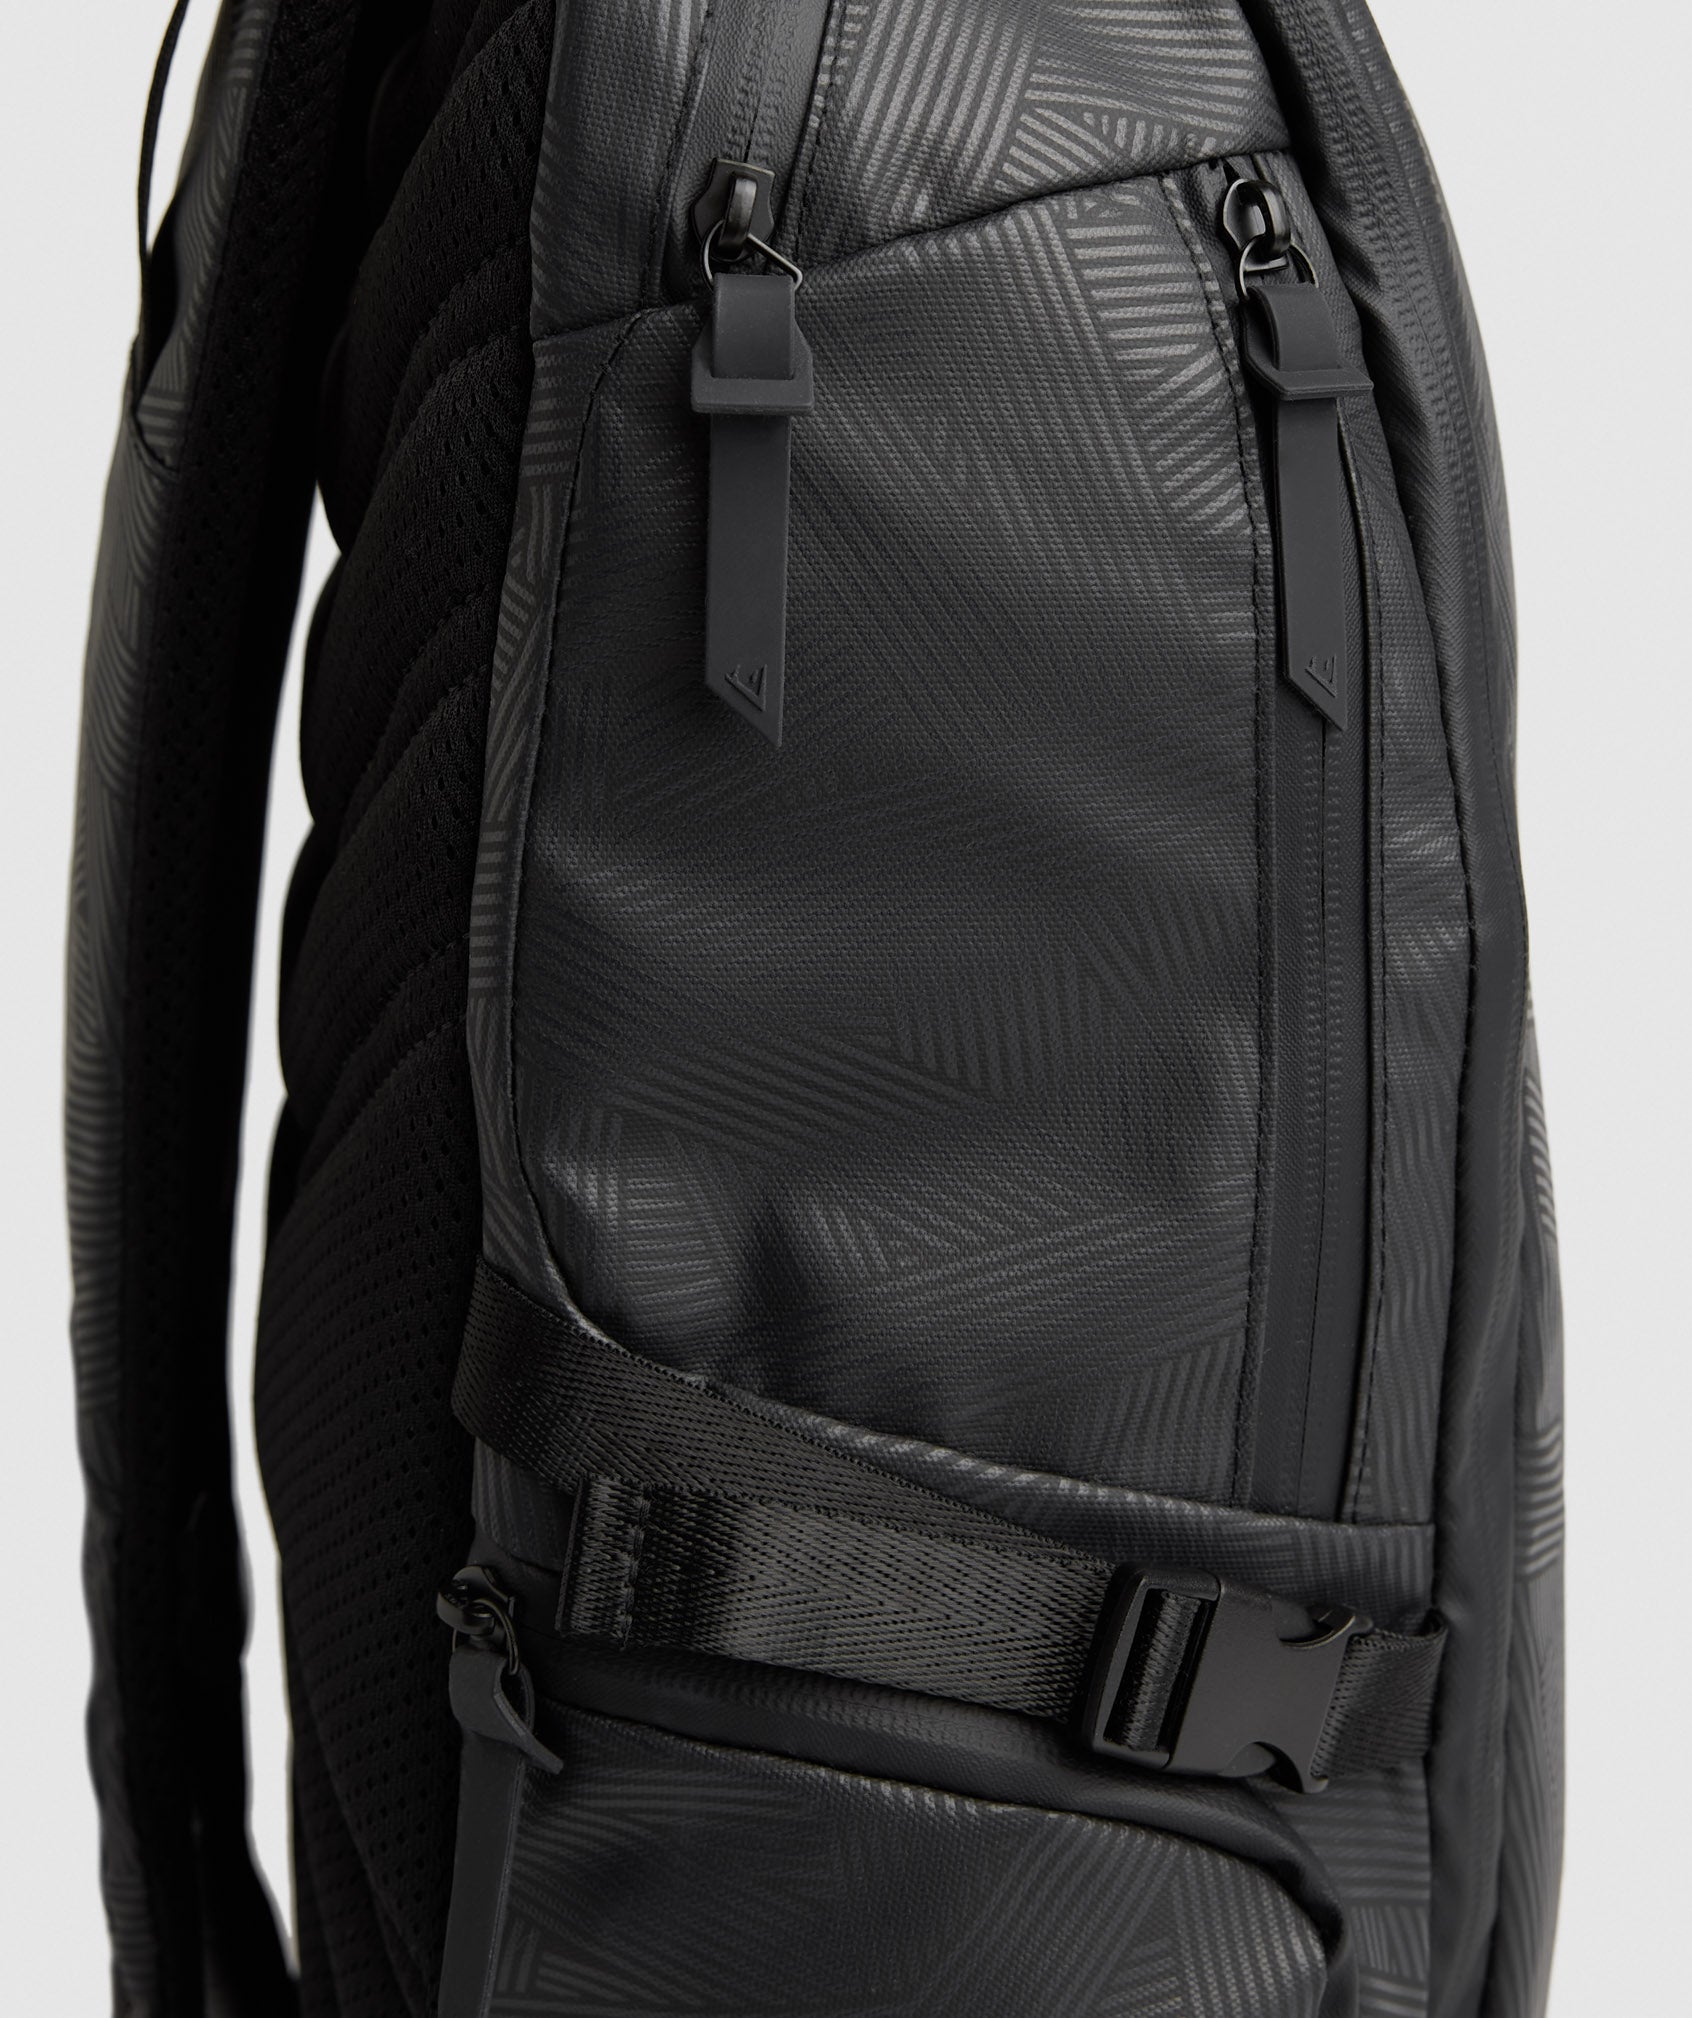 X-Series 0.3 Backpack in Black Print - view 8